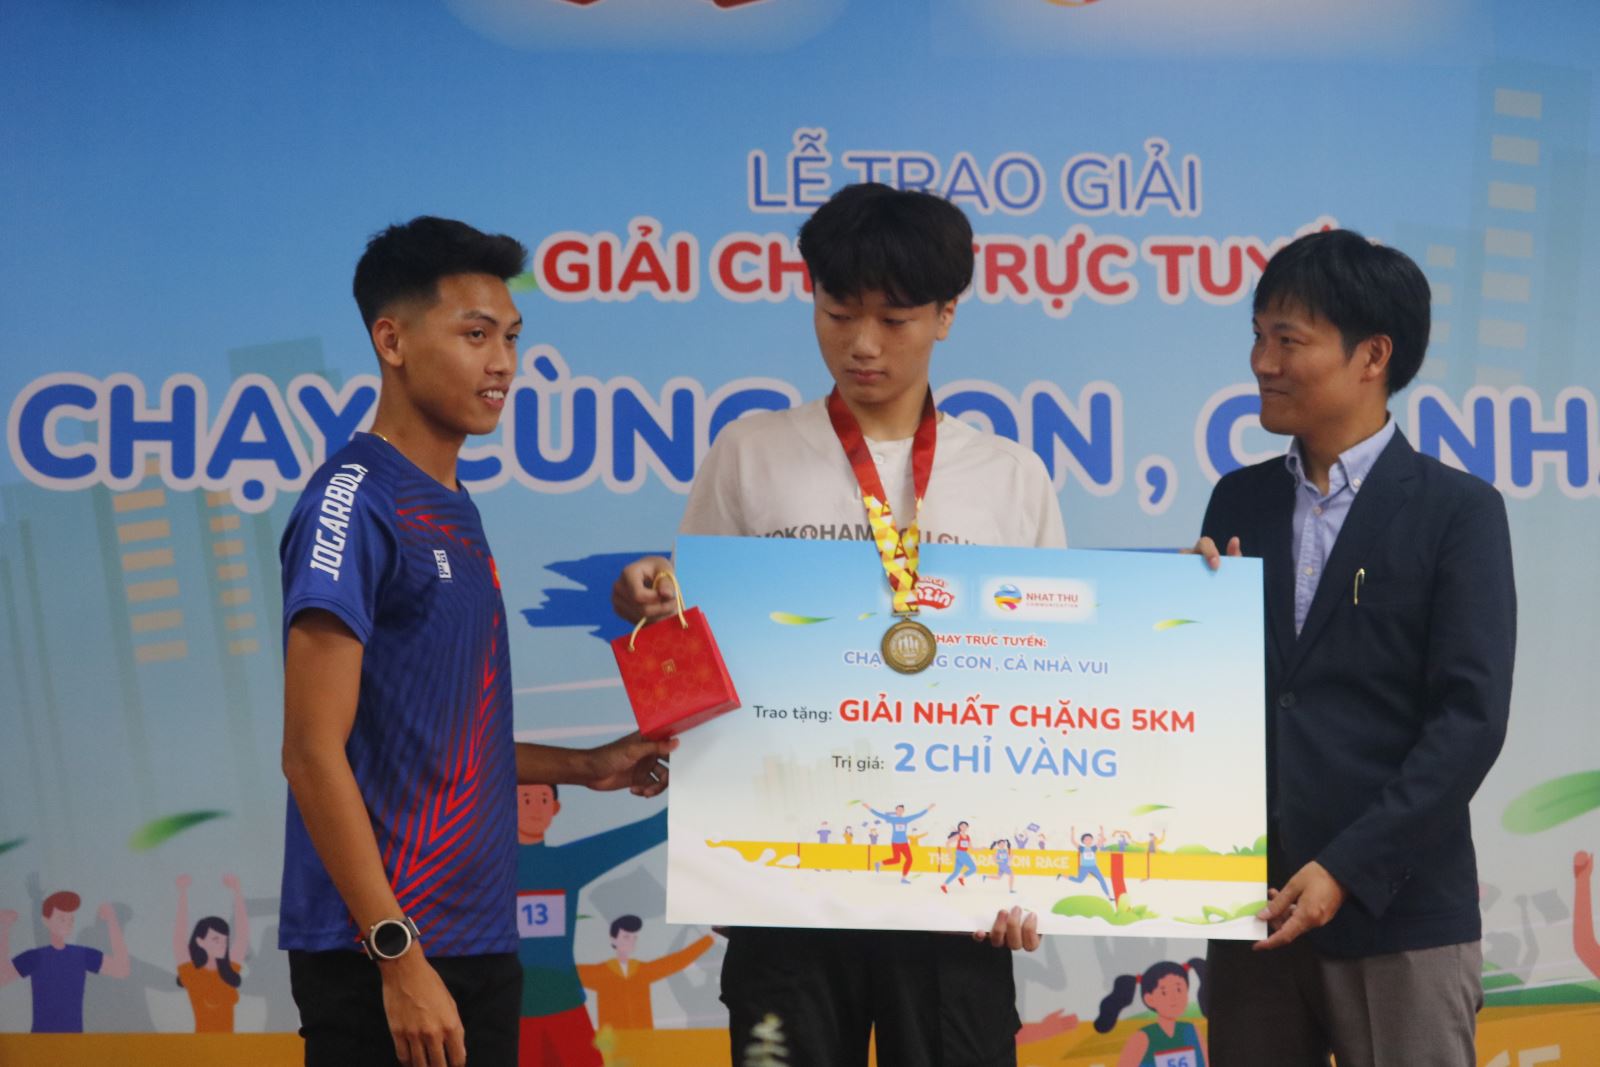 VĐV Trần Văn Đảng trao giải thưởng cho bé Đức Tin.